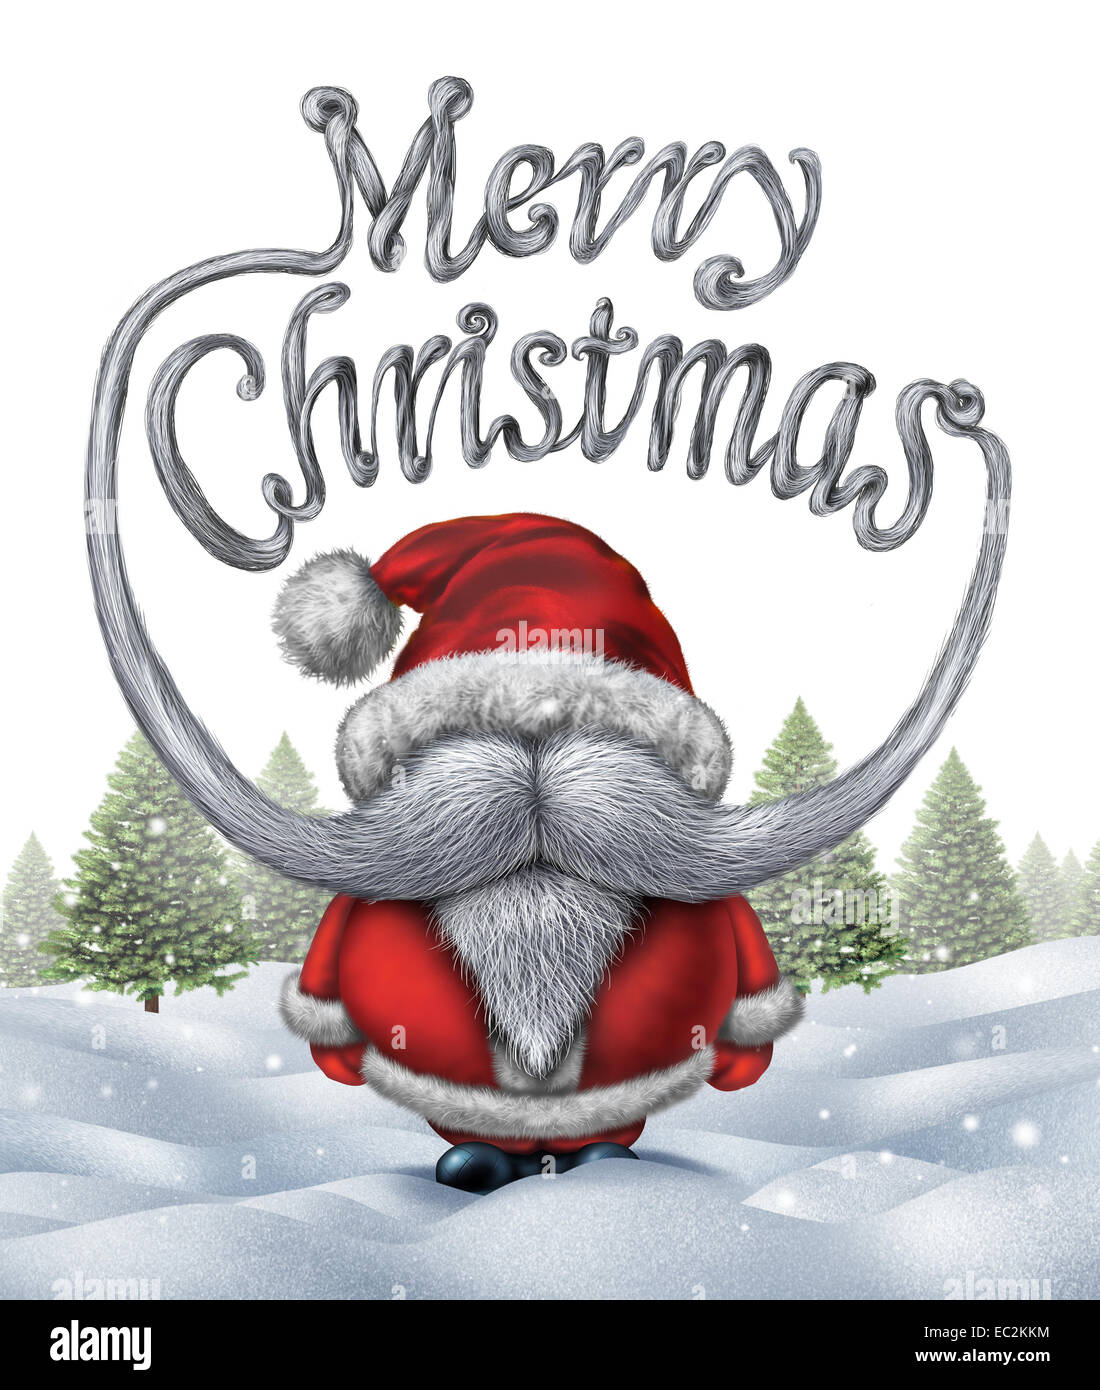 Frohe Weihnachten Santa Klausel Inschrift als eine lustige Weihnachtsmann  mit weißem Bart und Schnurrbart als festliche Winter Urlaub Typografie Text  auf Schnee Hintergrund mit Pinien geformt Stockfotografie - Alamy